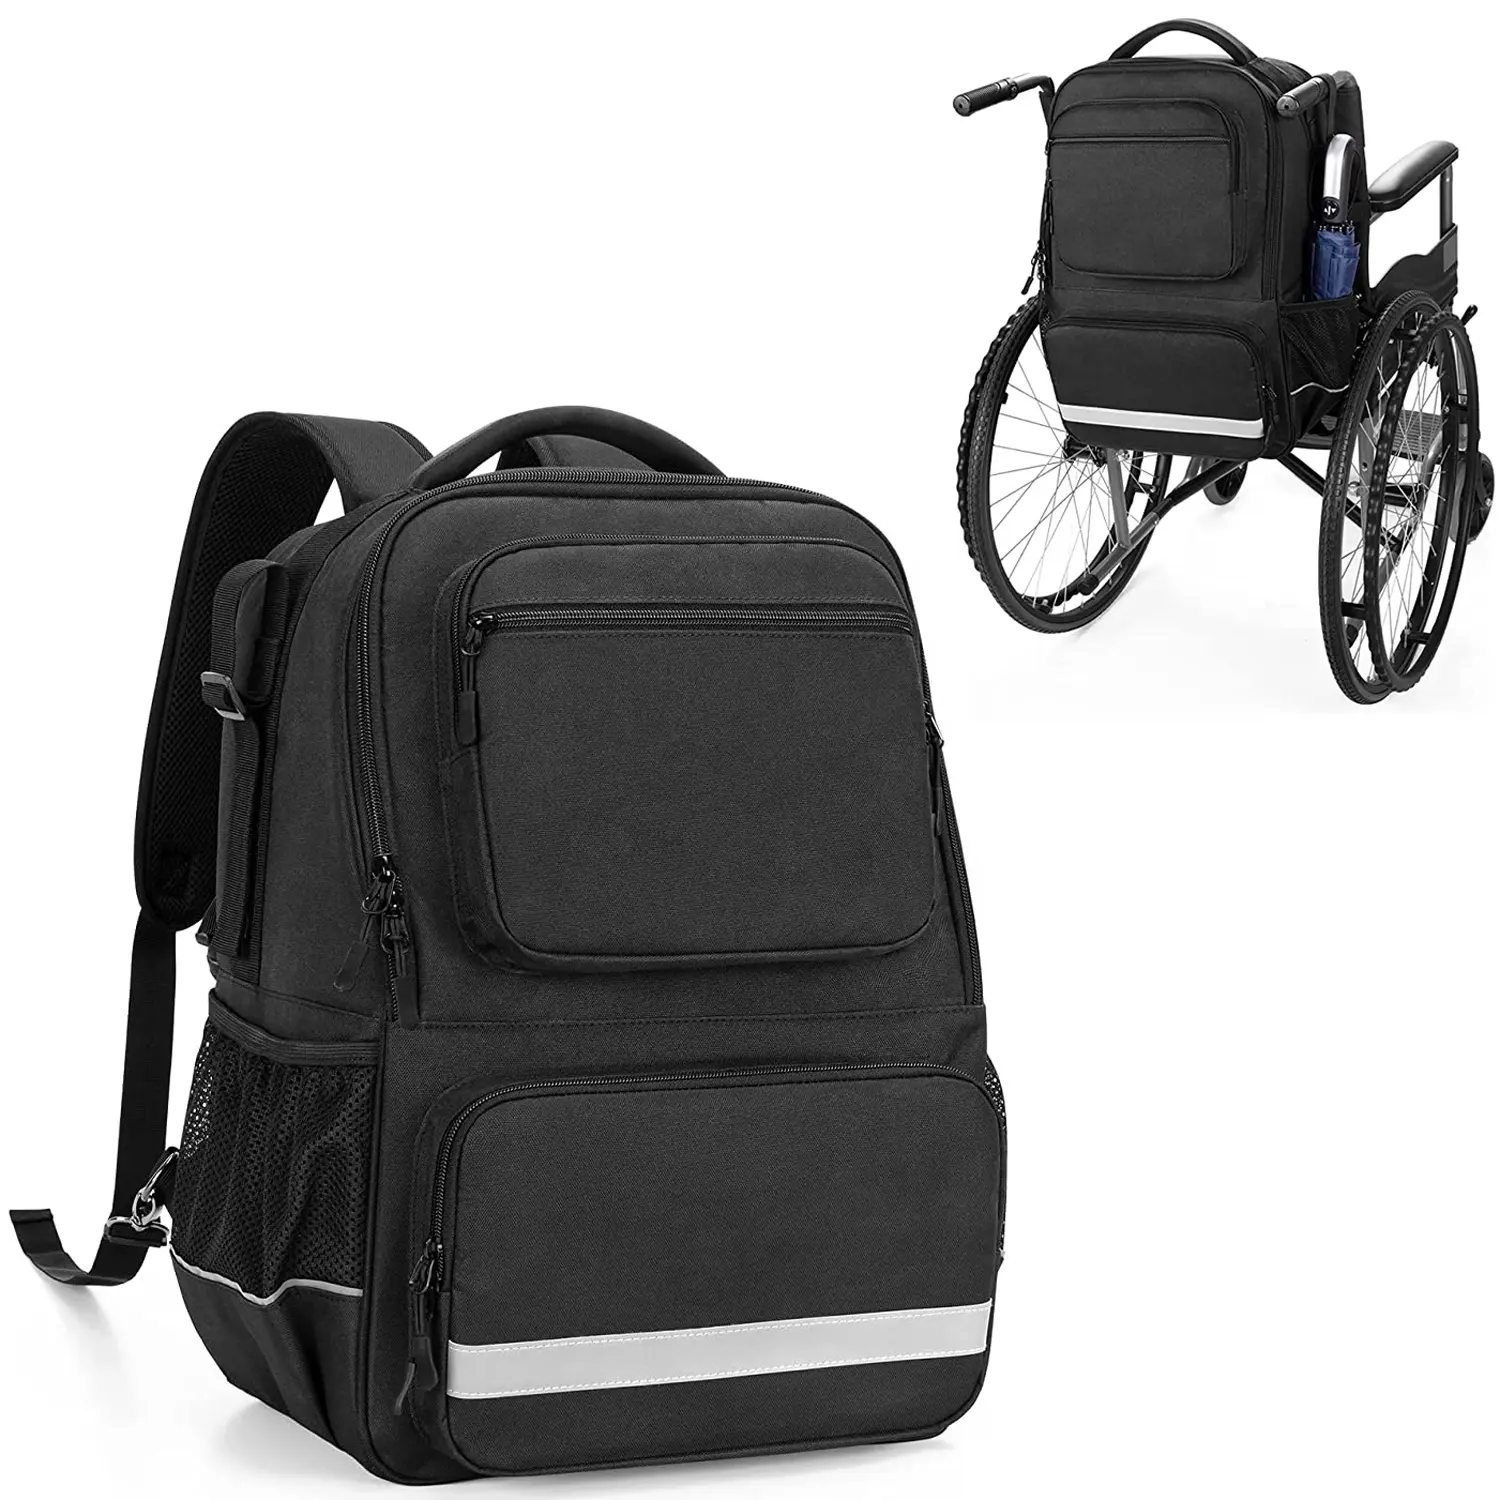 Sac à dos pour fauteuil roulant, avec pochette d'isolation thermique, rangement des médicaments, pour automobile